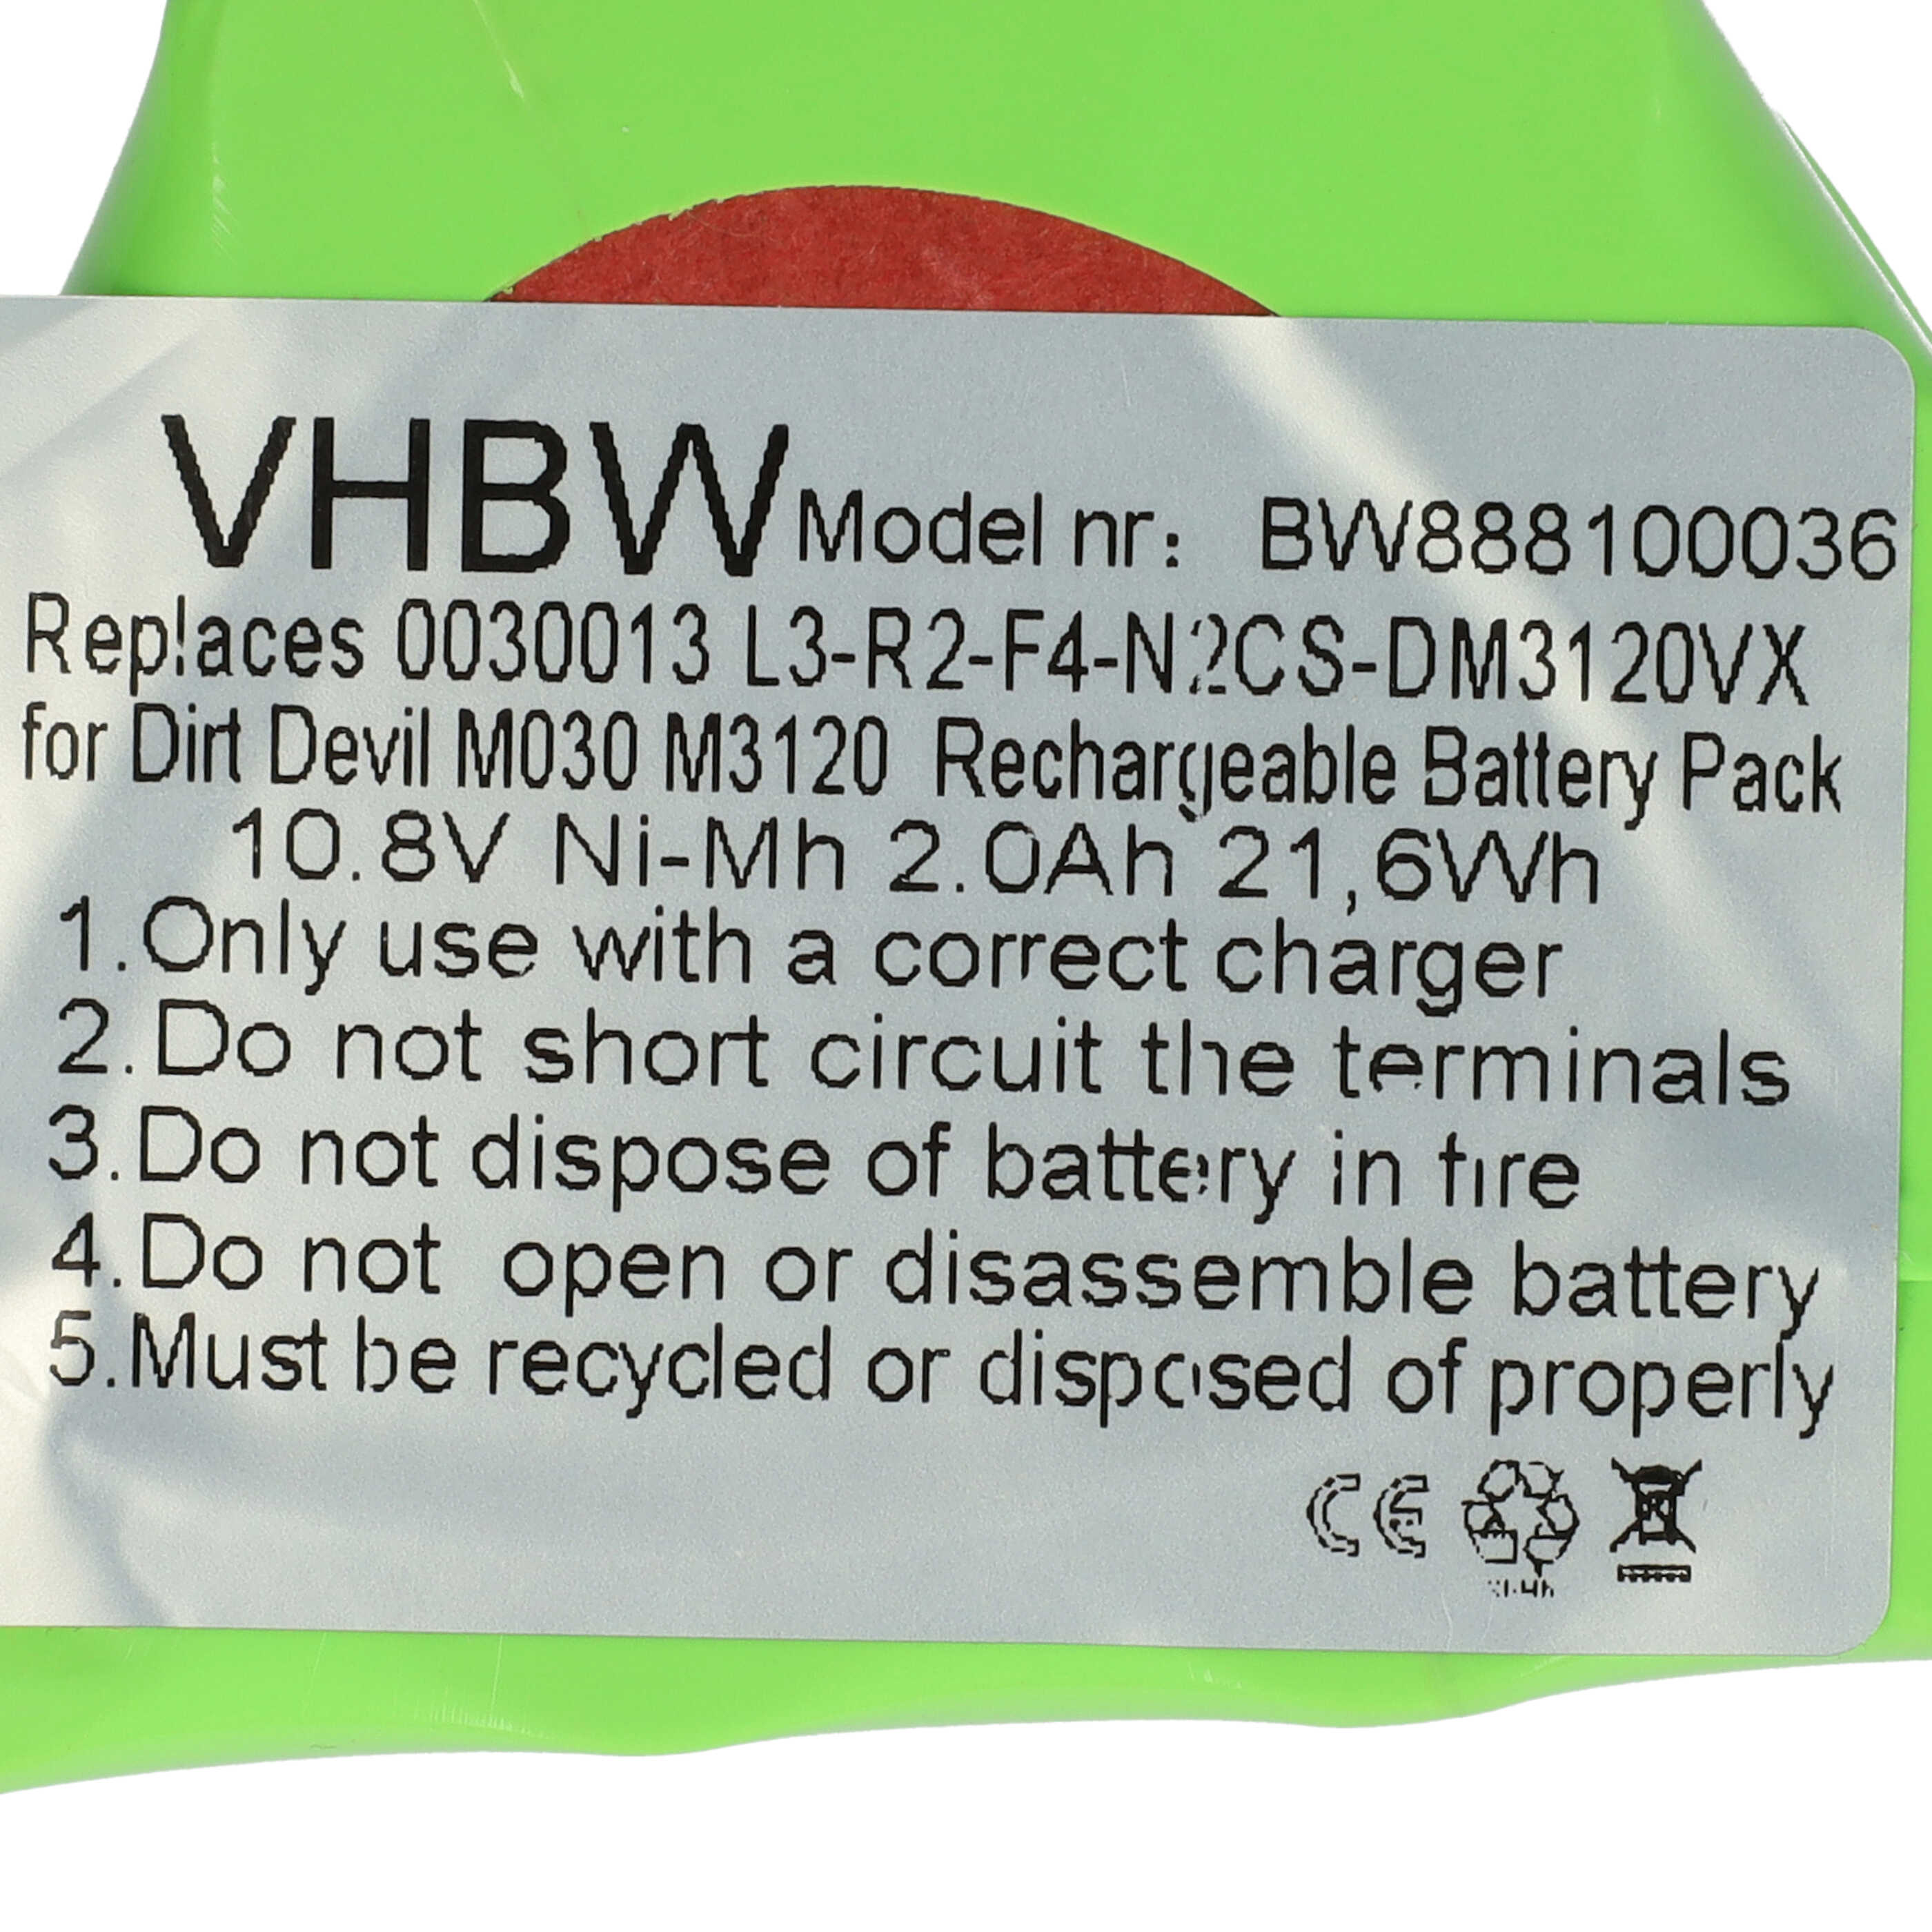 Akumulator do odkurzacza zamiennik Dirt Devil 0030013, L3-R2-F4-N2 - 2000 mAh 10,8 V NiMH